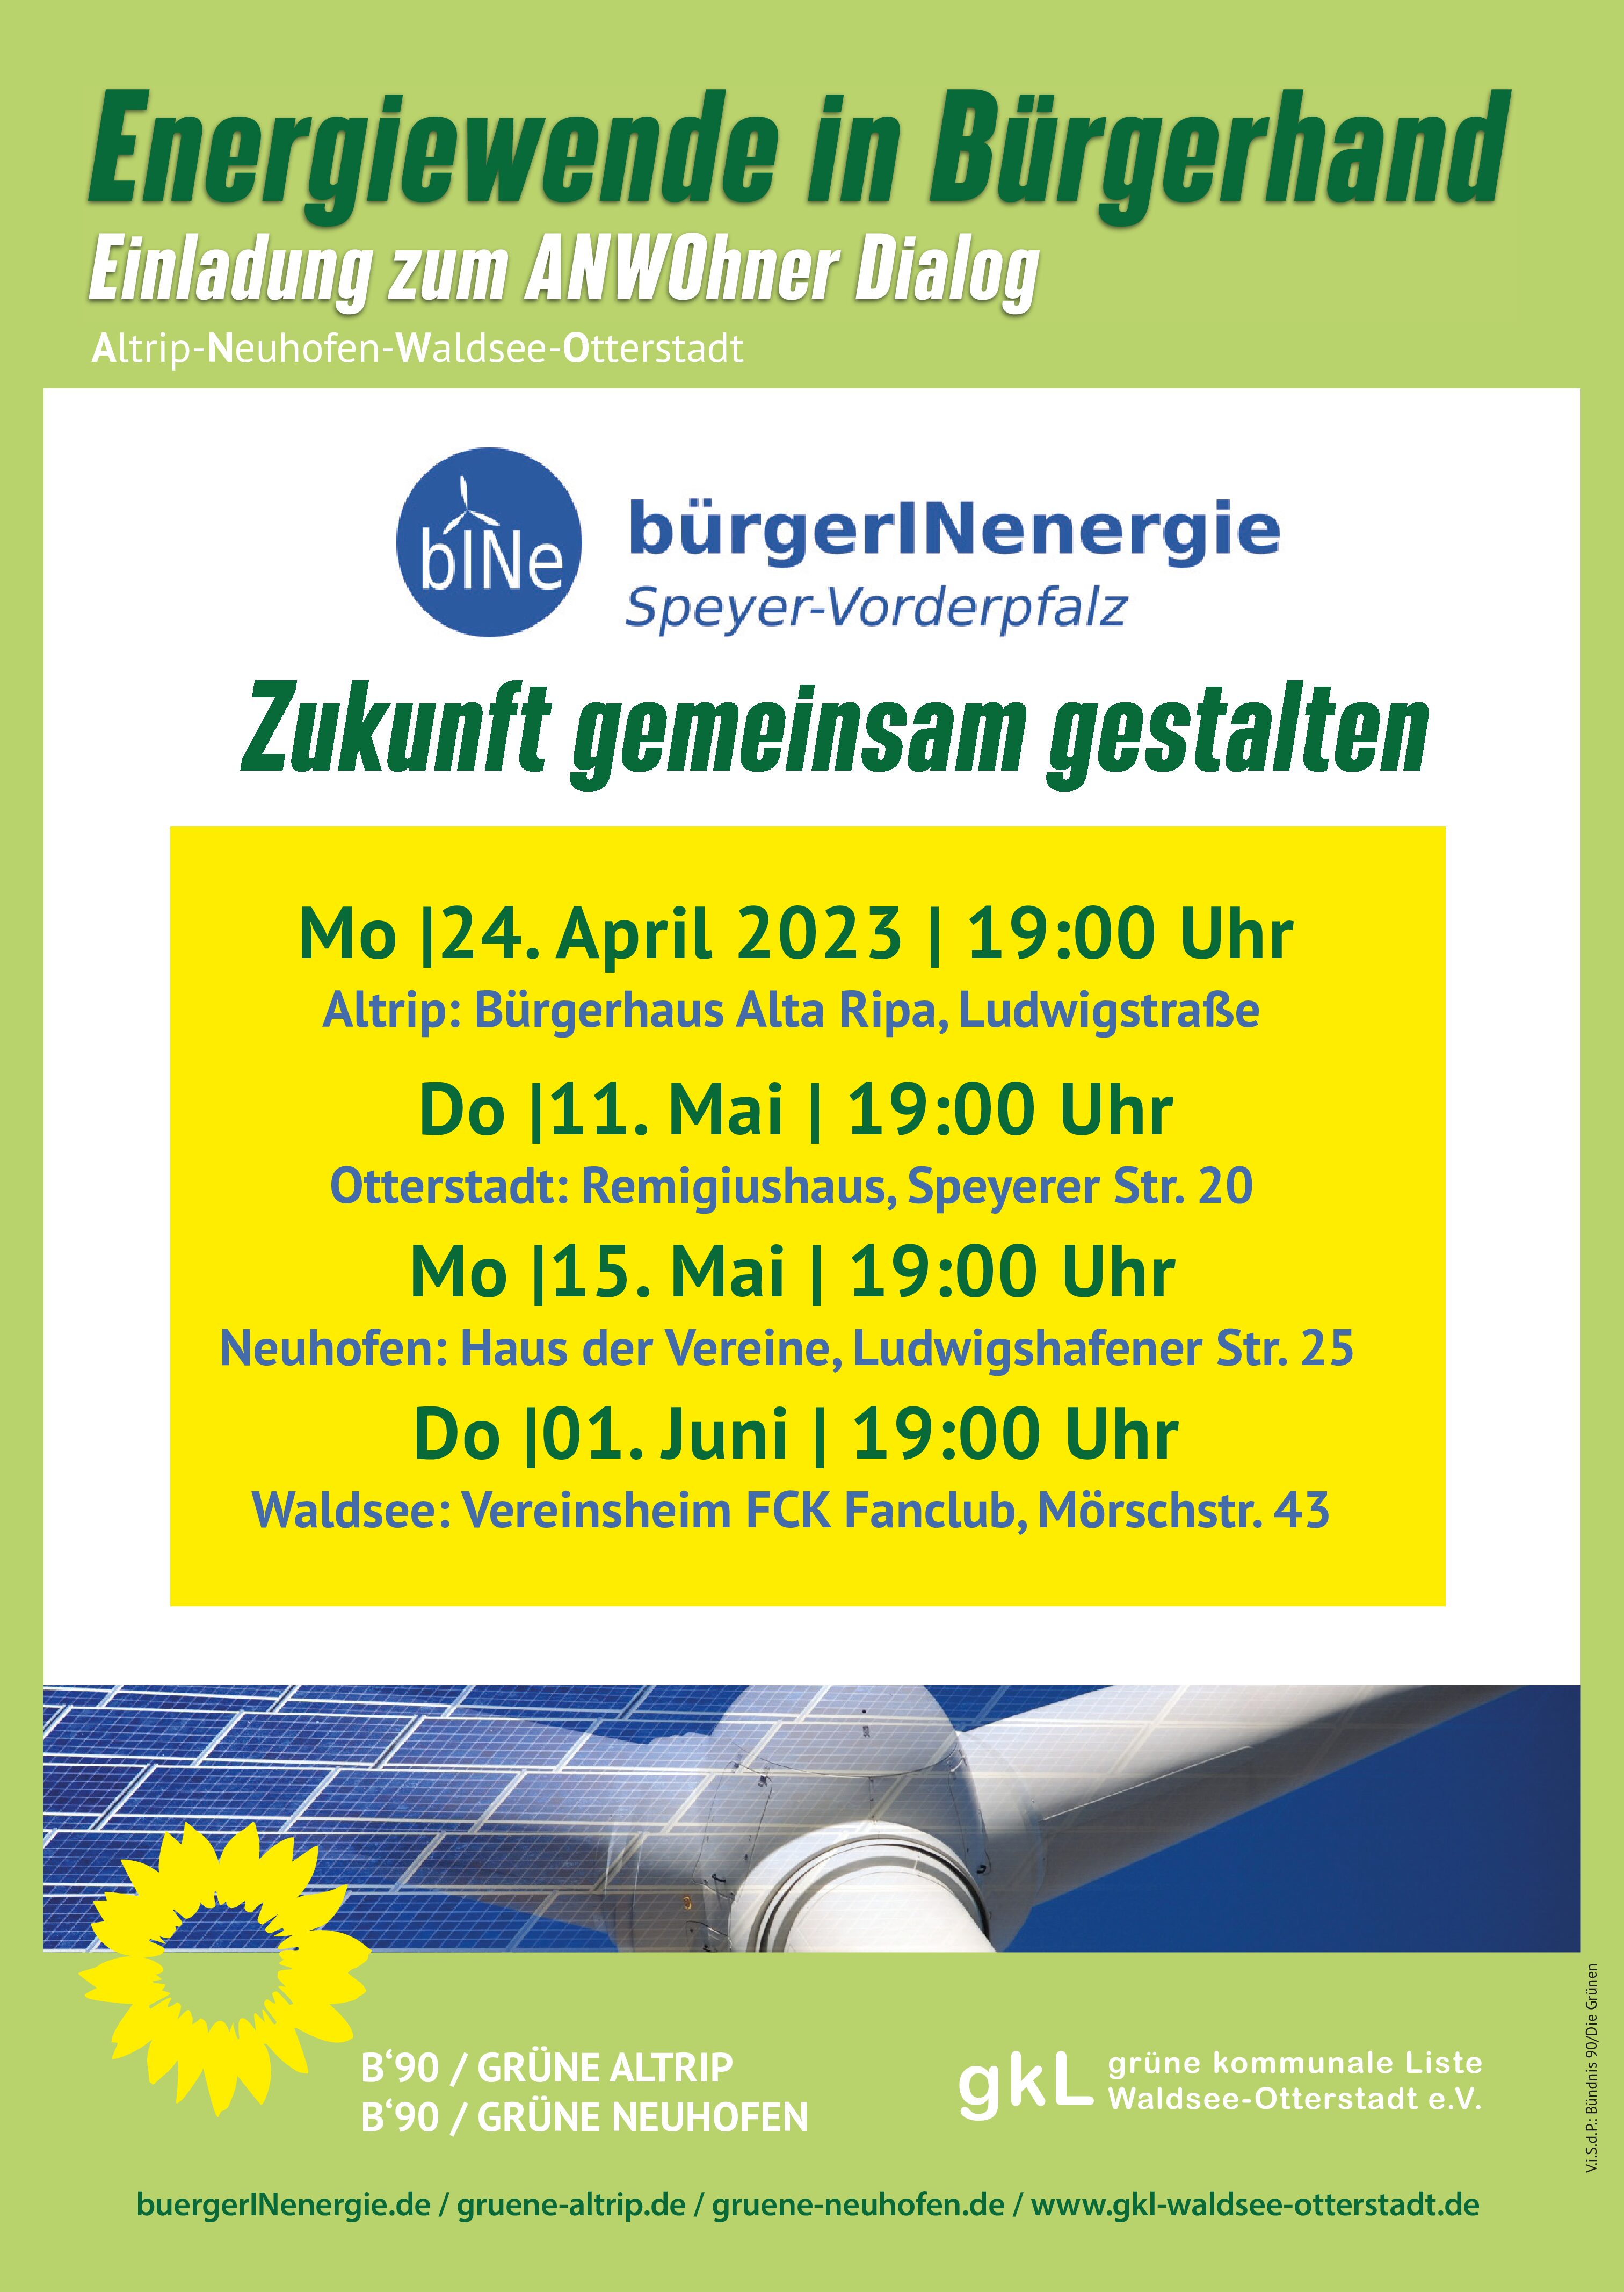 Energiewende in Bürgerhand – Einladung zum ANWOhner Dialog VG Rheinauen am 15. Mai um 19 Uhr